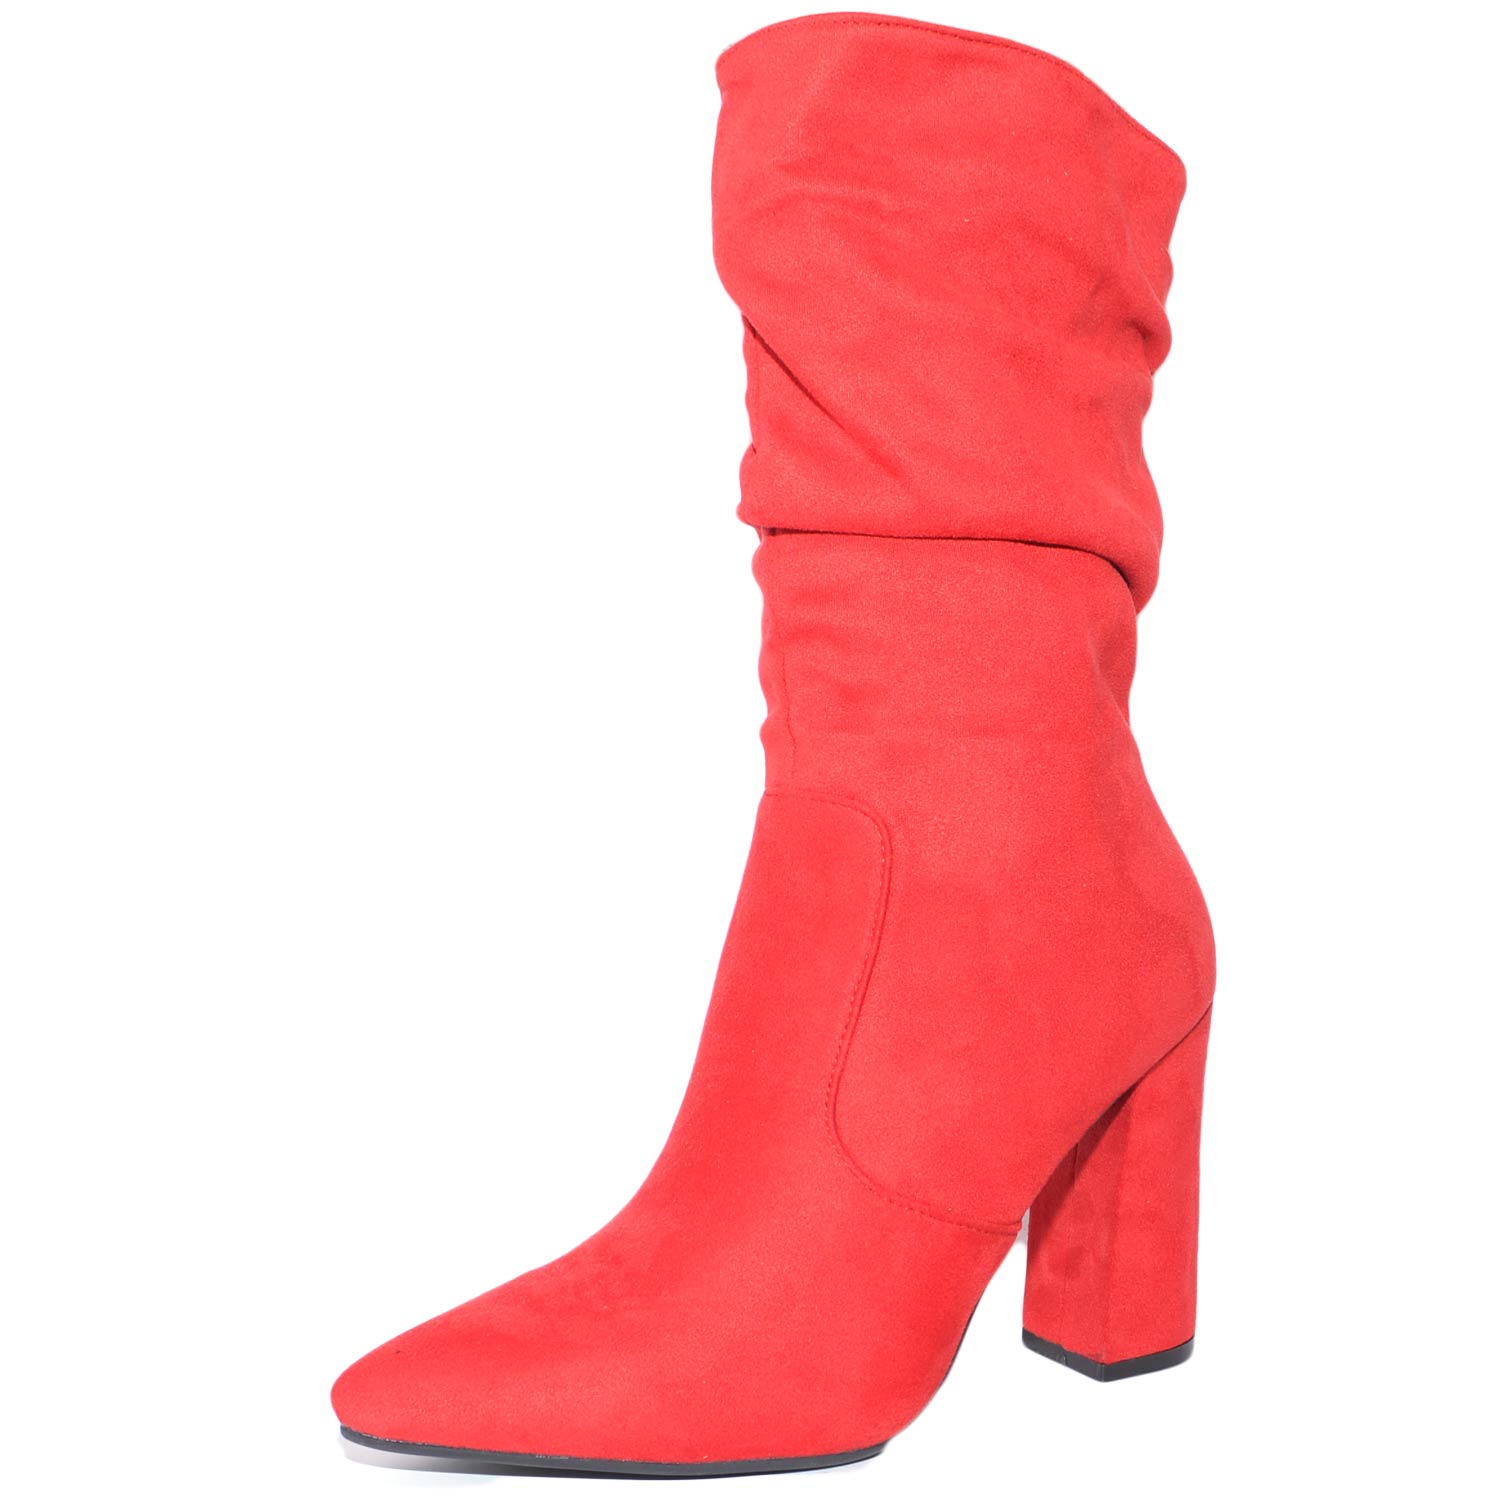 Tronchetto scarpe donna a punta modello linea Basic in scamosciato rosso gambale rouches tendenza moda casual